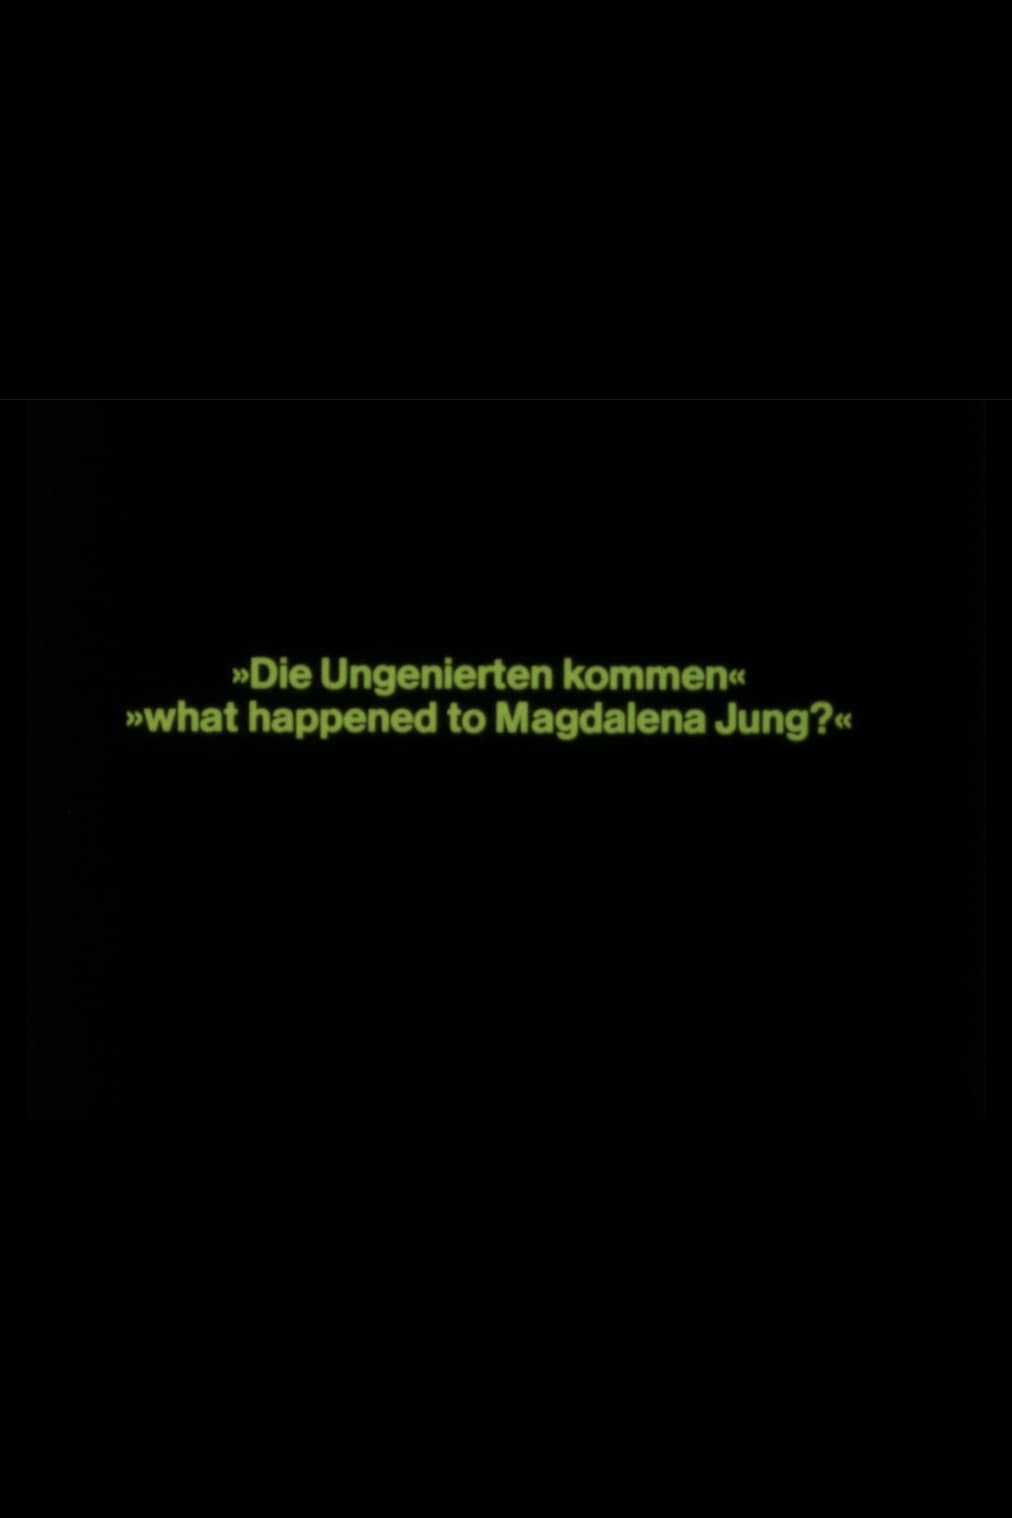 What happened to Magdalena Jung? – Die Ungenierten kommen